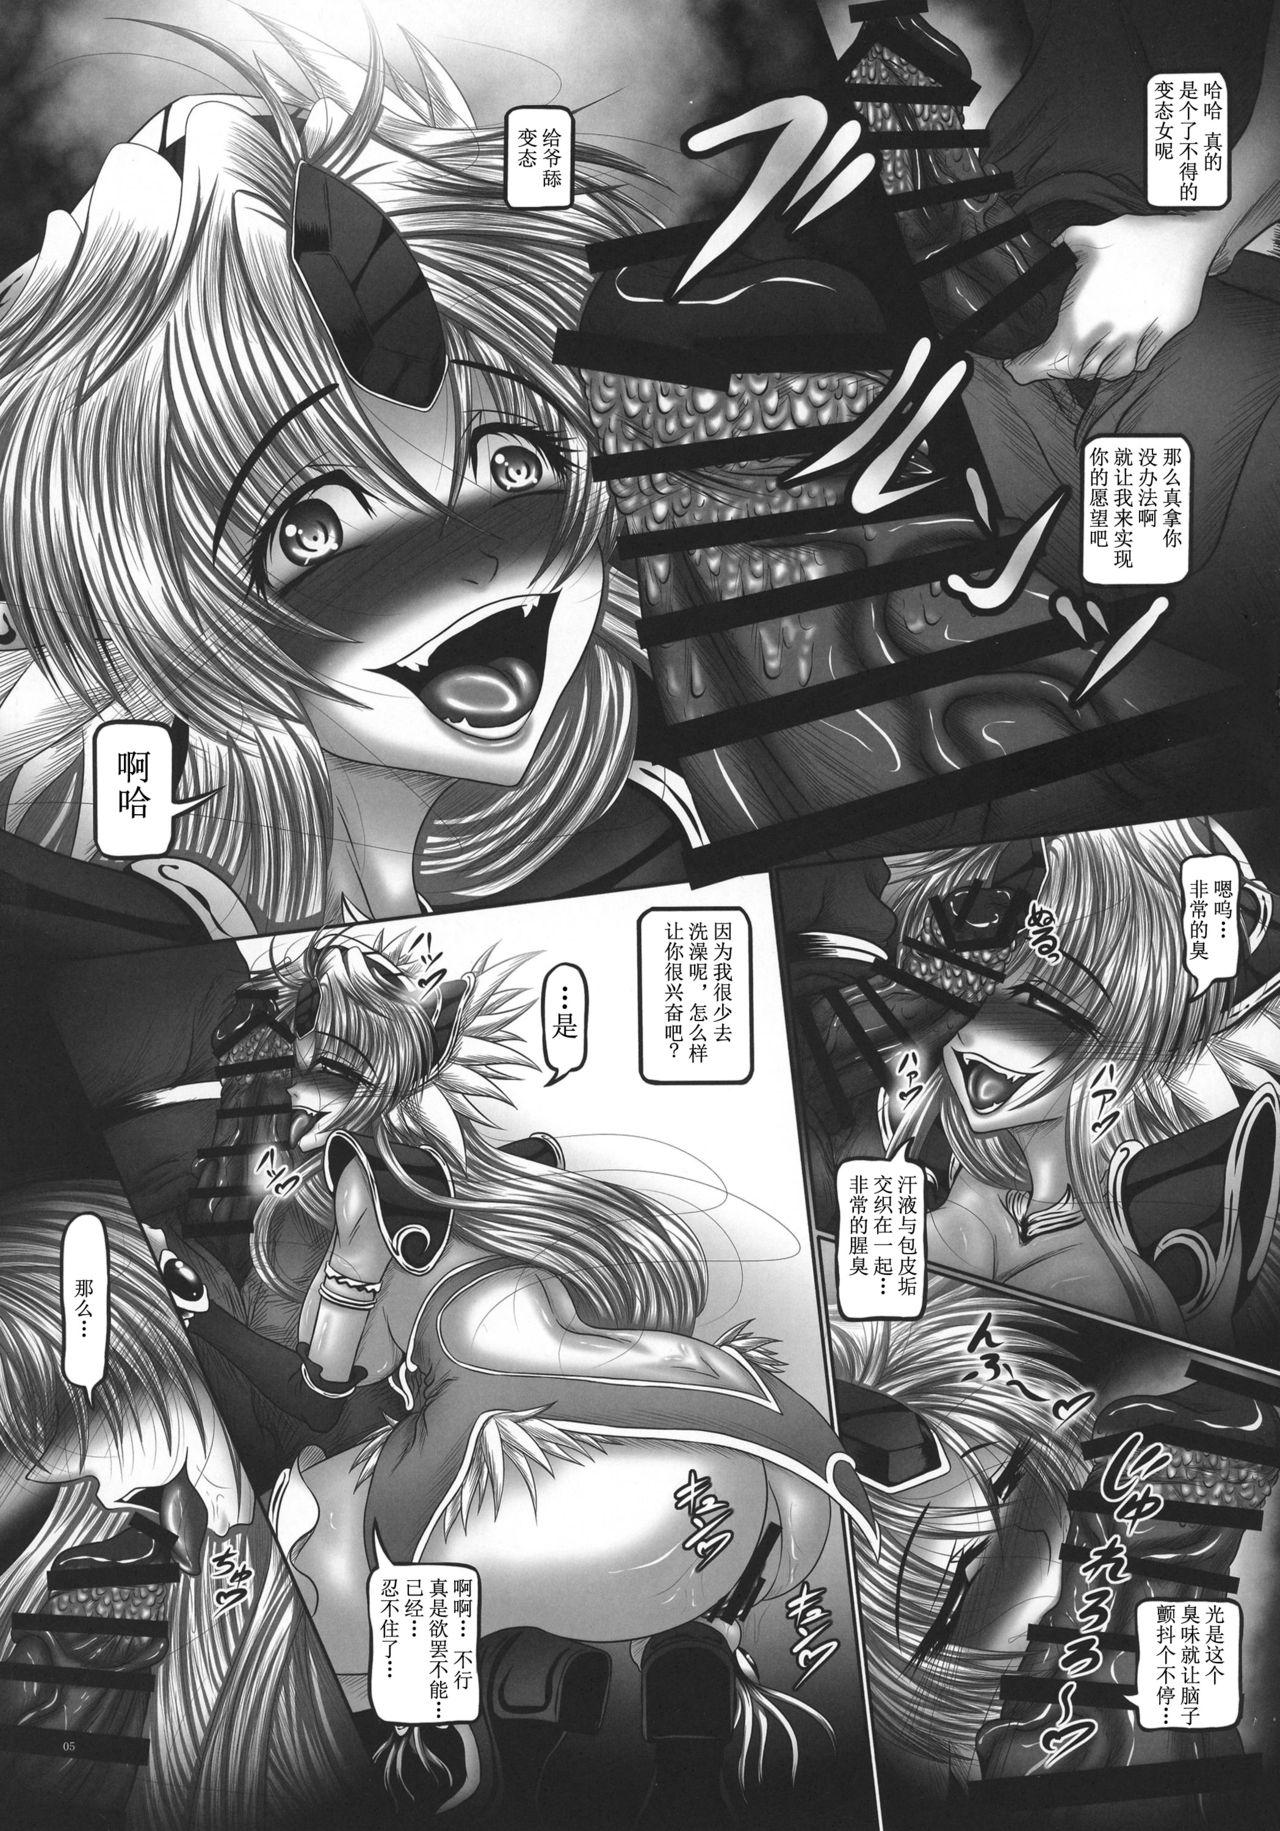 Group Dragon' s Fall II - Seiken densetsu 3 Seiken densetsu Softcore - Page 5